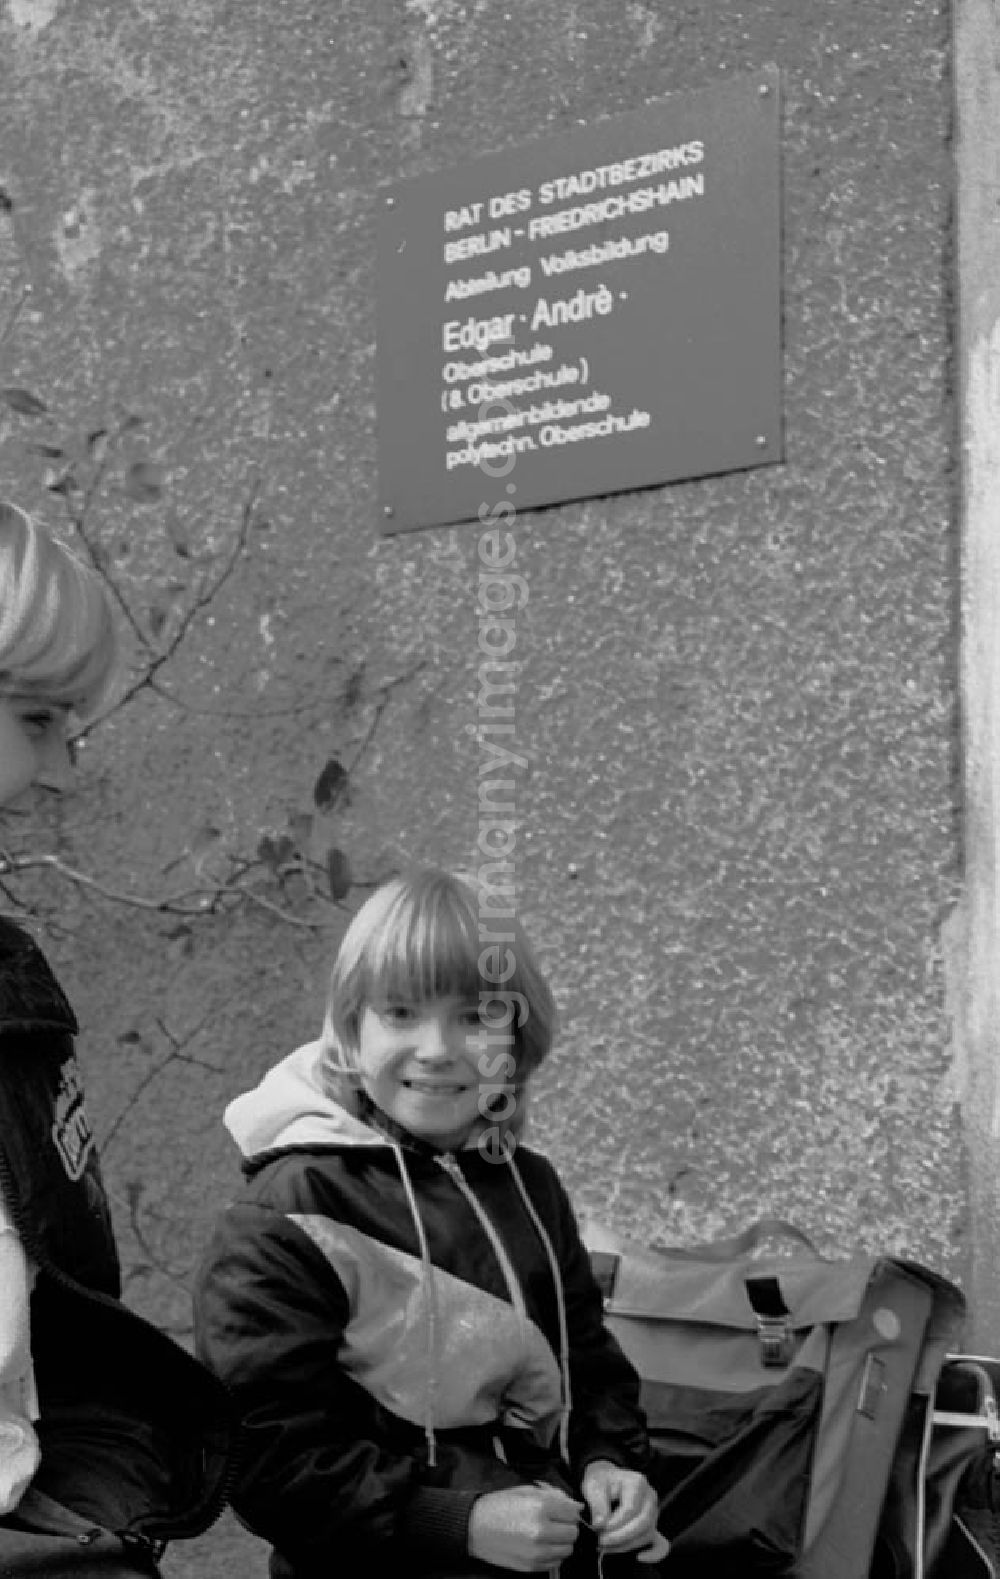 GDR photo archive: Berlin - Schüler mit Ranzen / Schultasche an der Etkar-André-Oberschule in Friedrichshain, Strausberger Straße 38.